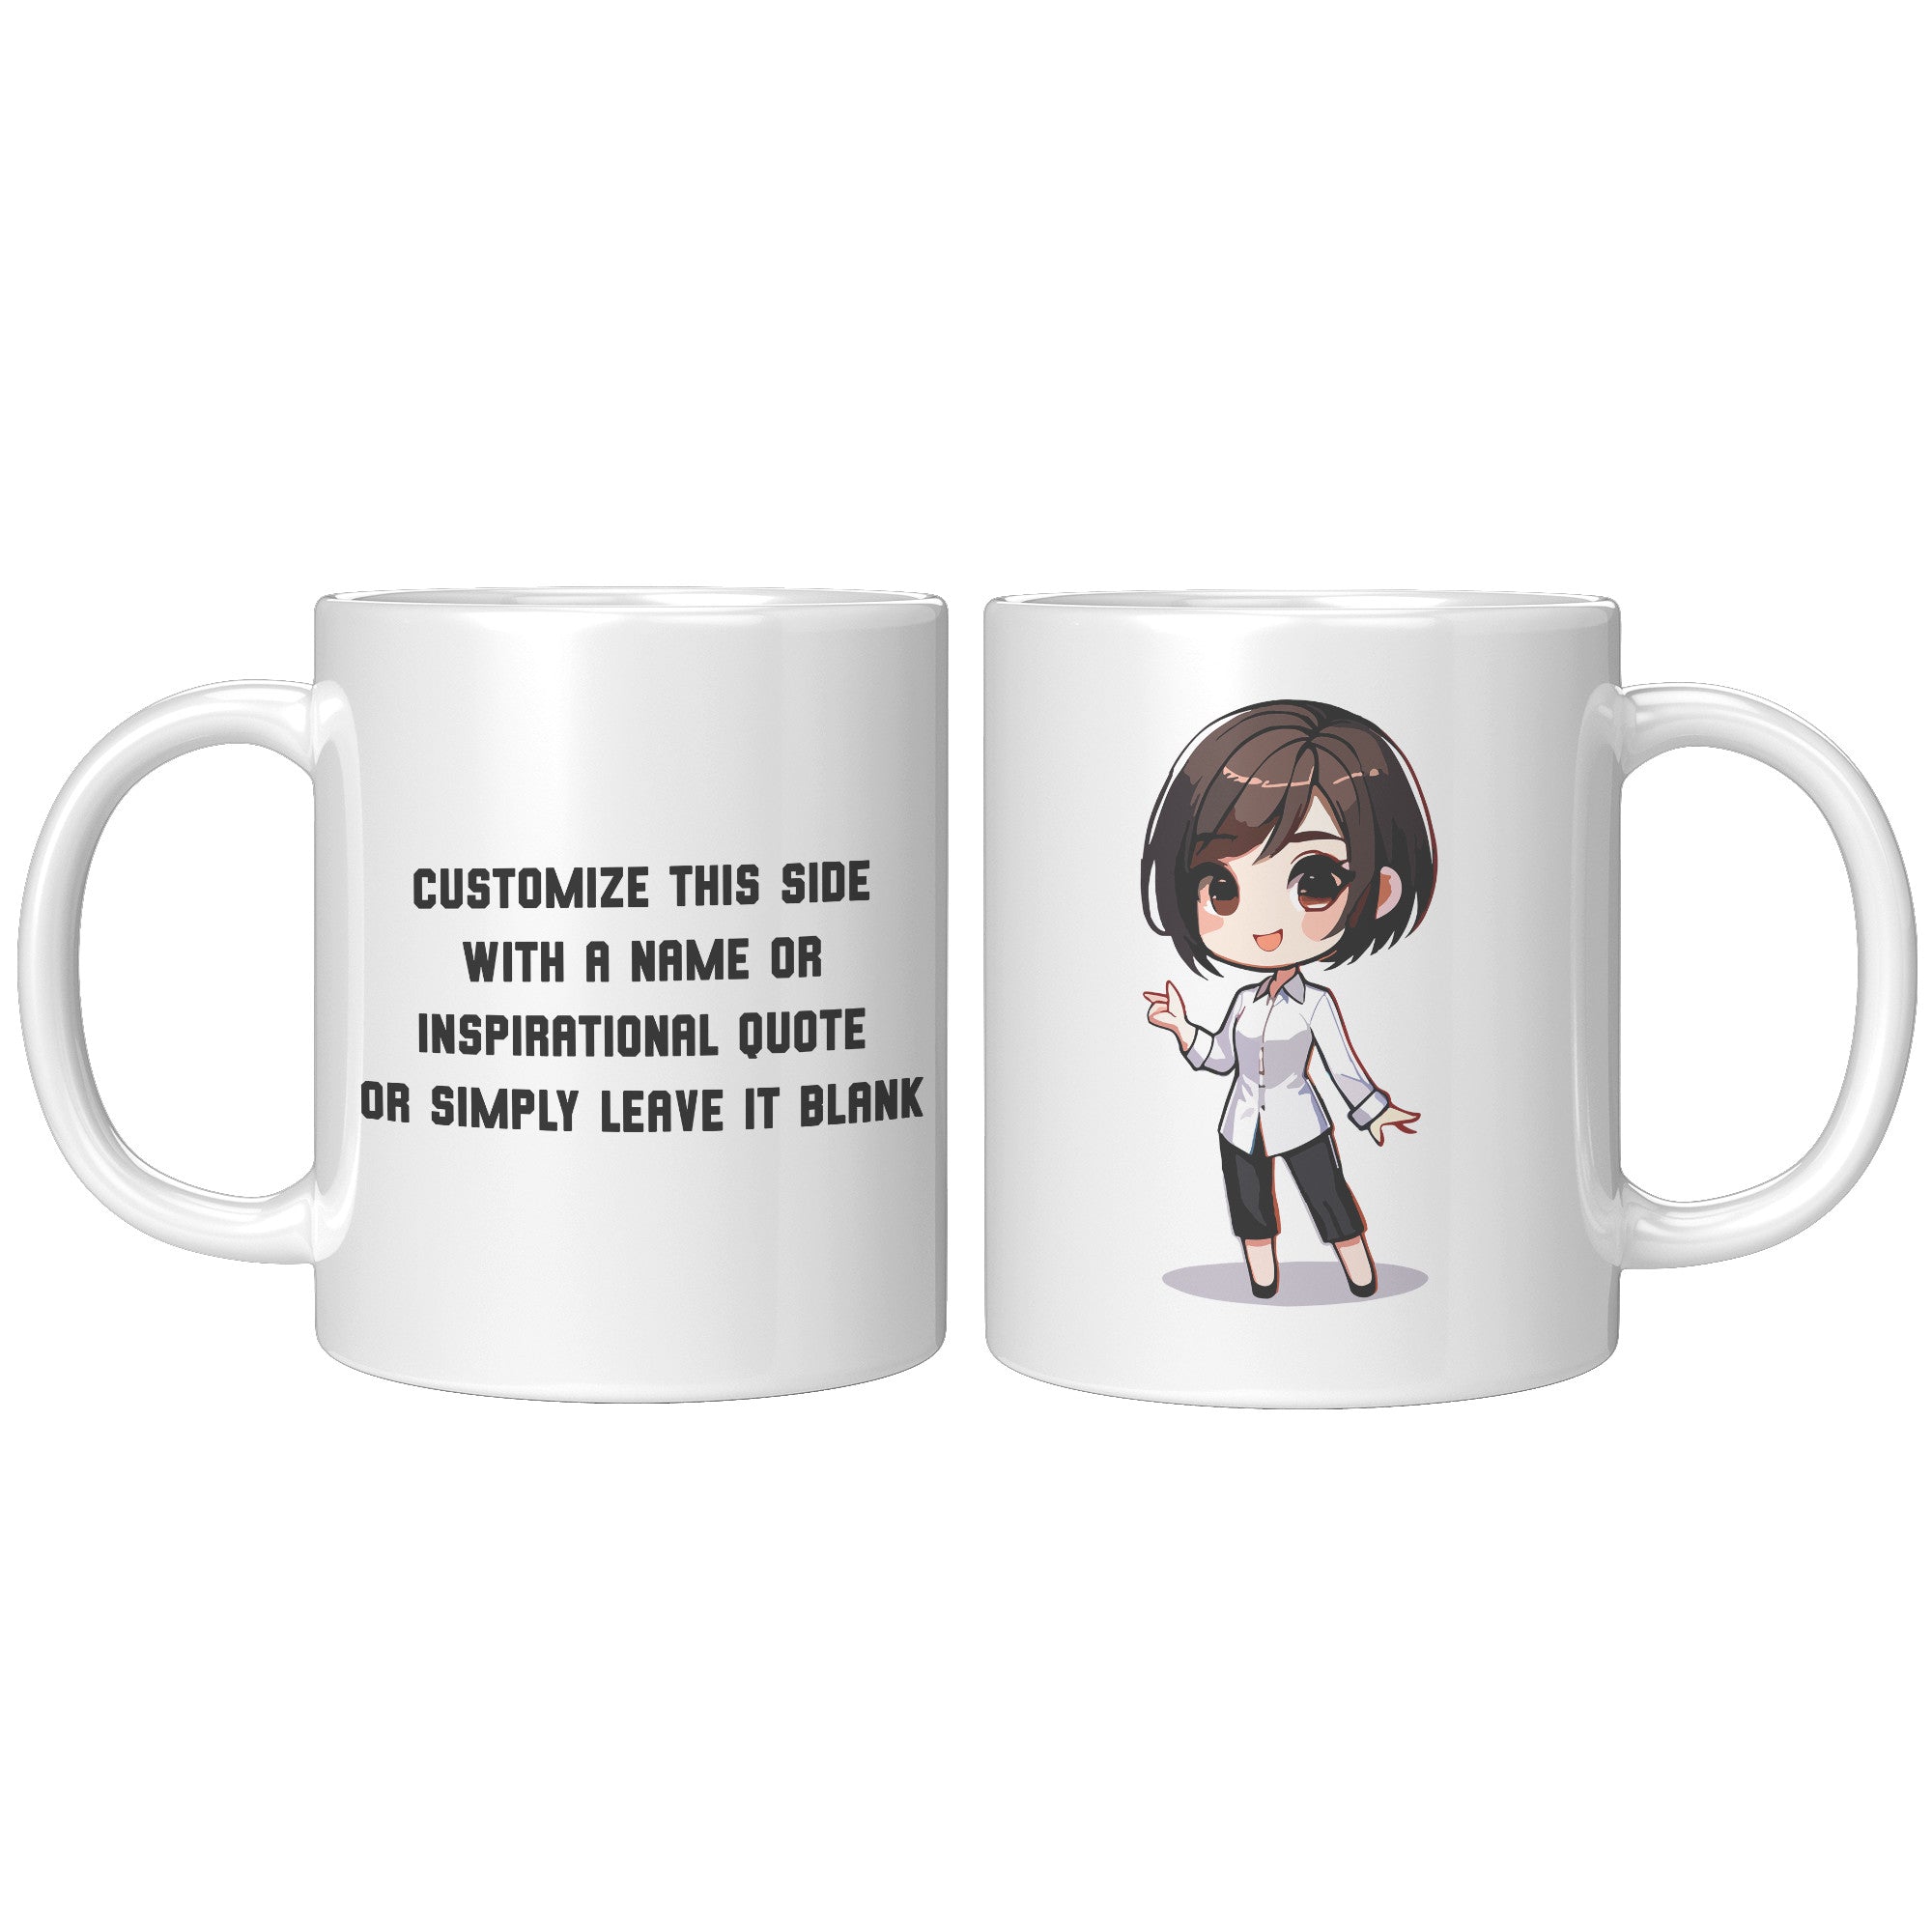 "Marites Gossip Queen Coffee Mug - Cute Cartoon 'Ano Ang Latest?' Cup - Perfect Chismosa Gift - Filipino Slang Tea Mug" - GGG